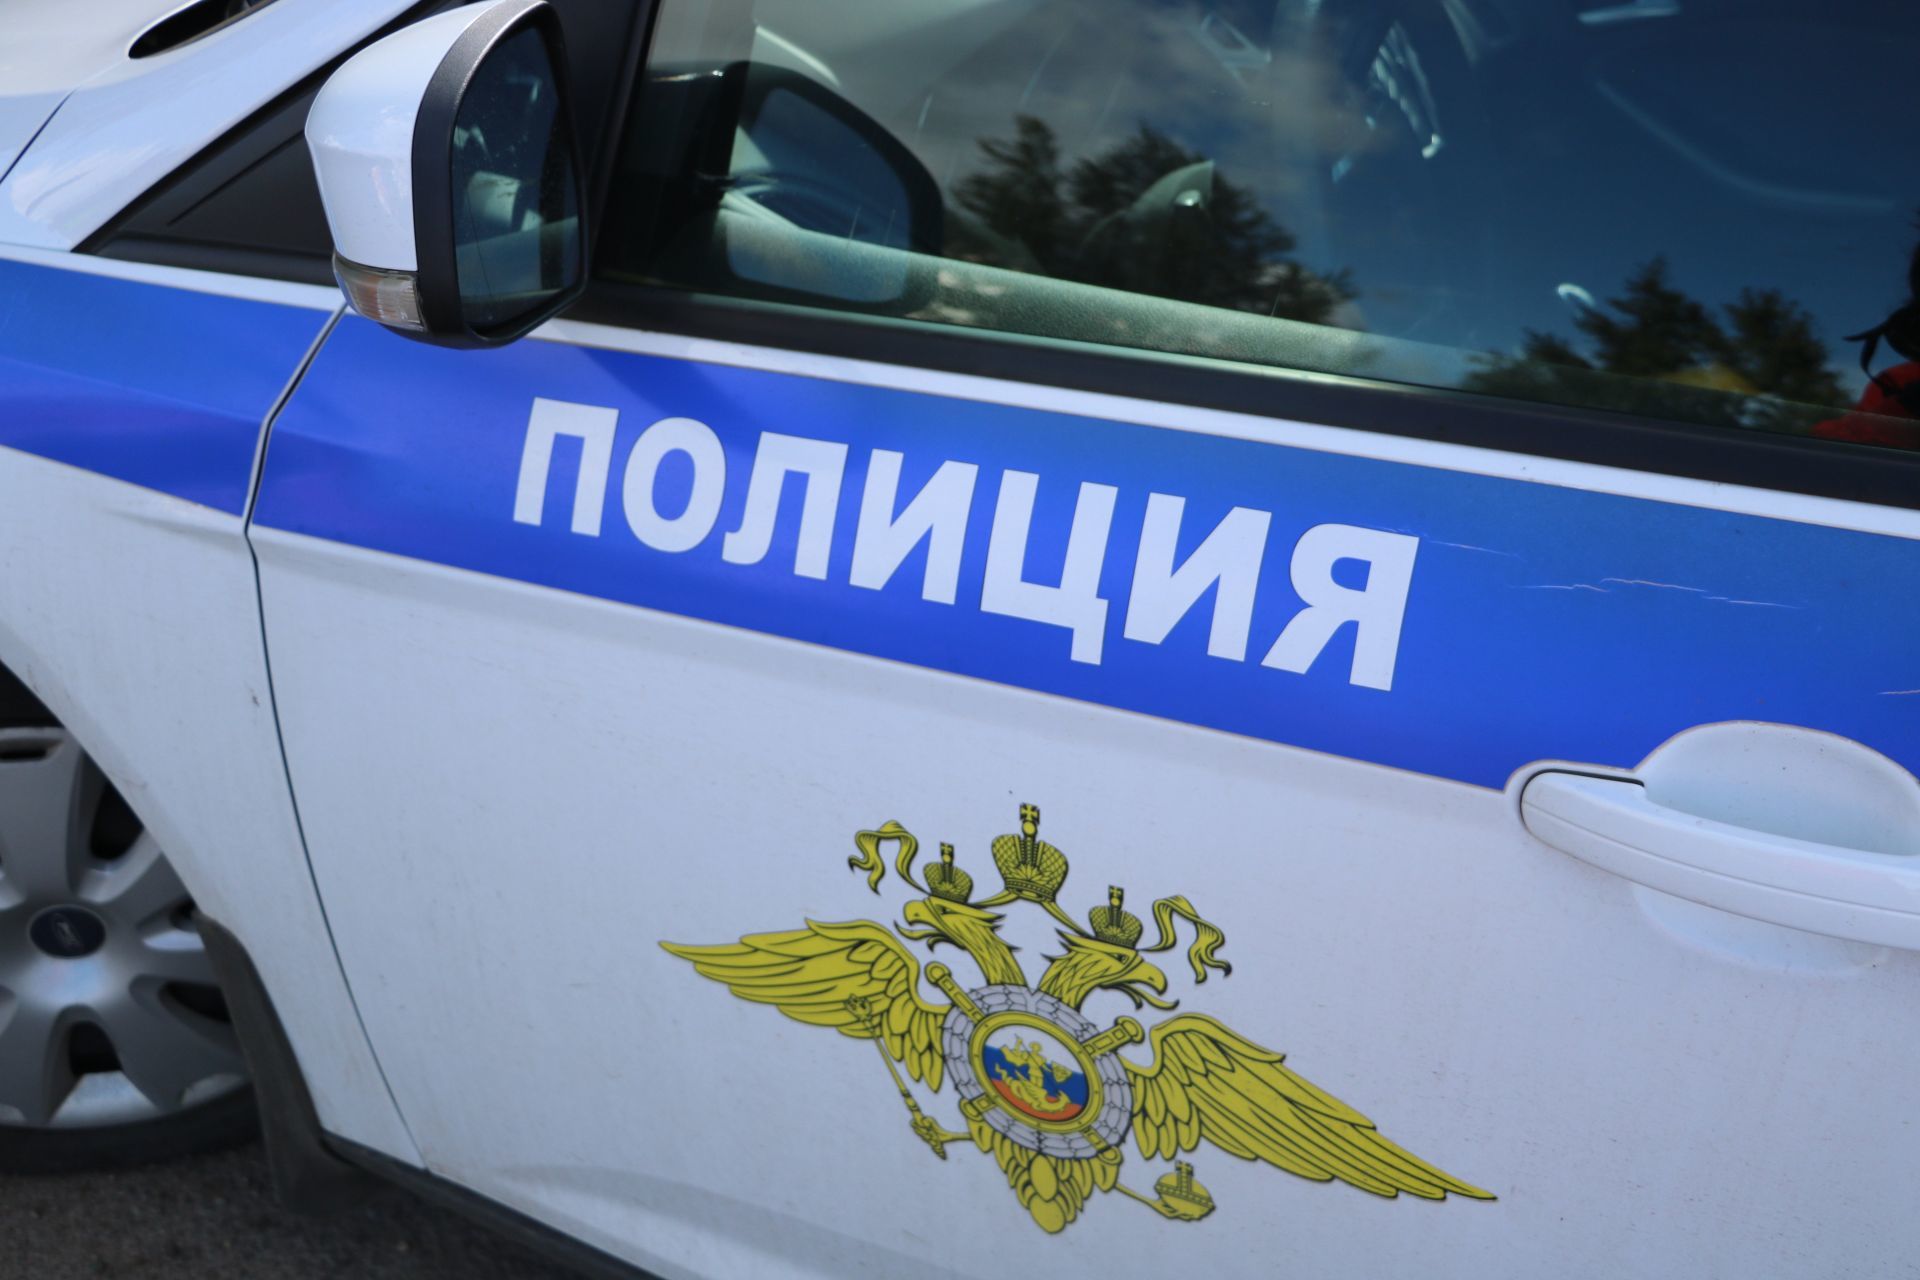 Казан полицейскийлары яшерен урыннарга 18 төргәк наркотик яшергән Кыргызстан кешесен тоткарлаган